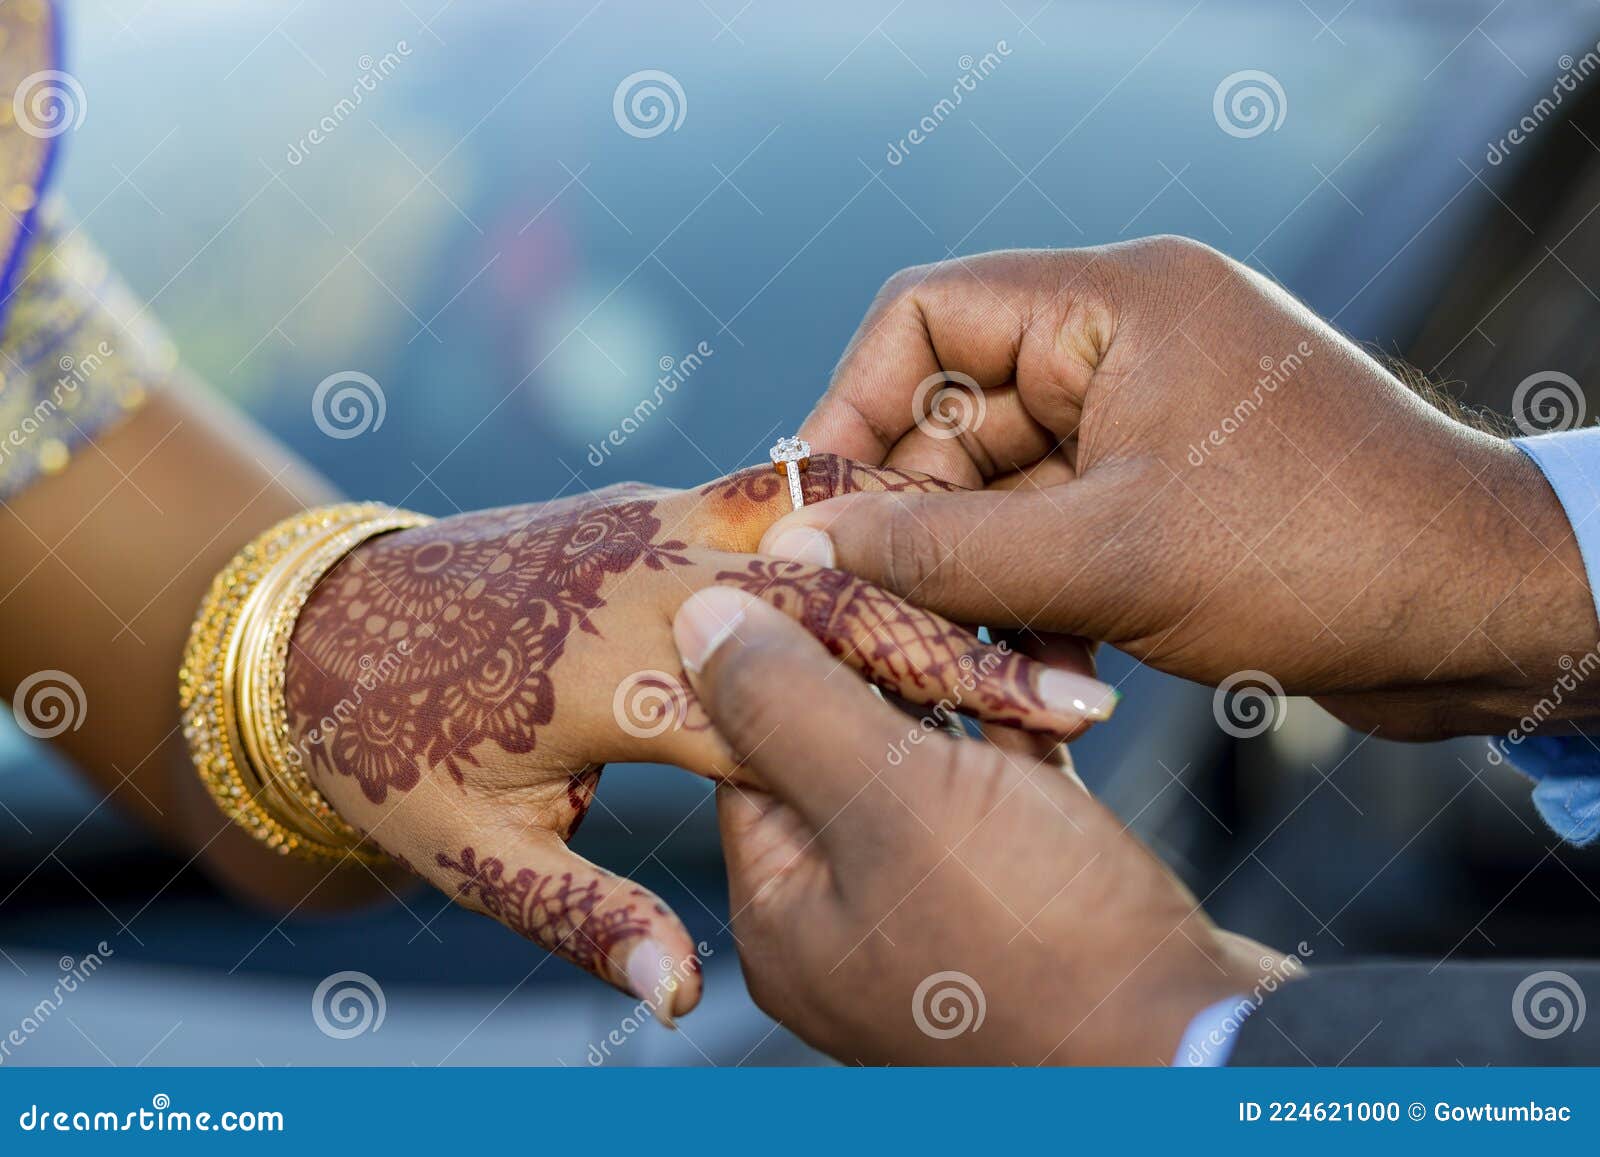 Why Wedding Ring Is Worn On The Left Hand - उल्टे हाथ में ही क्यों पहनी  जाती है सगाई की अंगूठी? जानें असली वजह